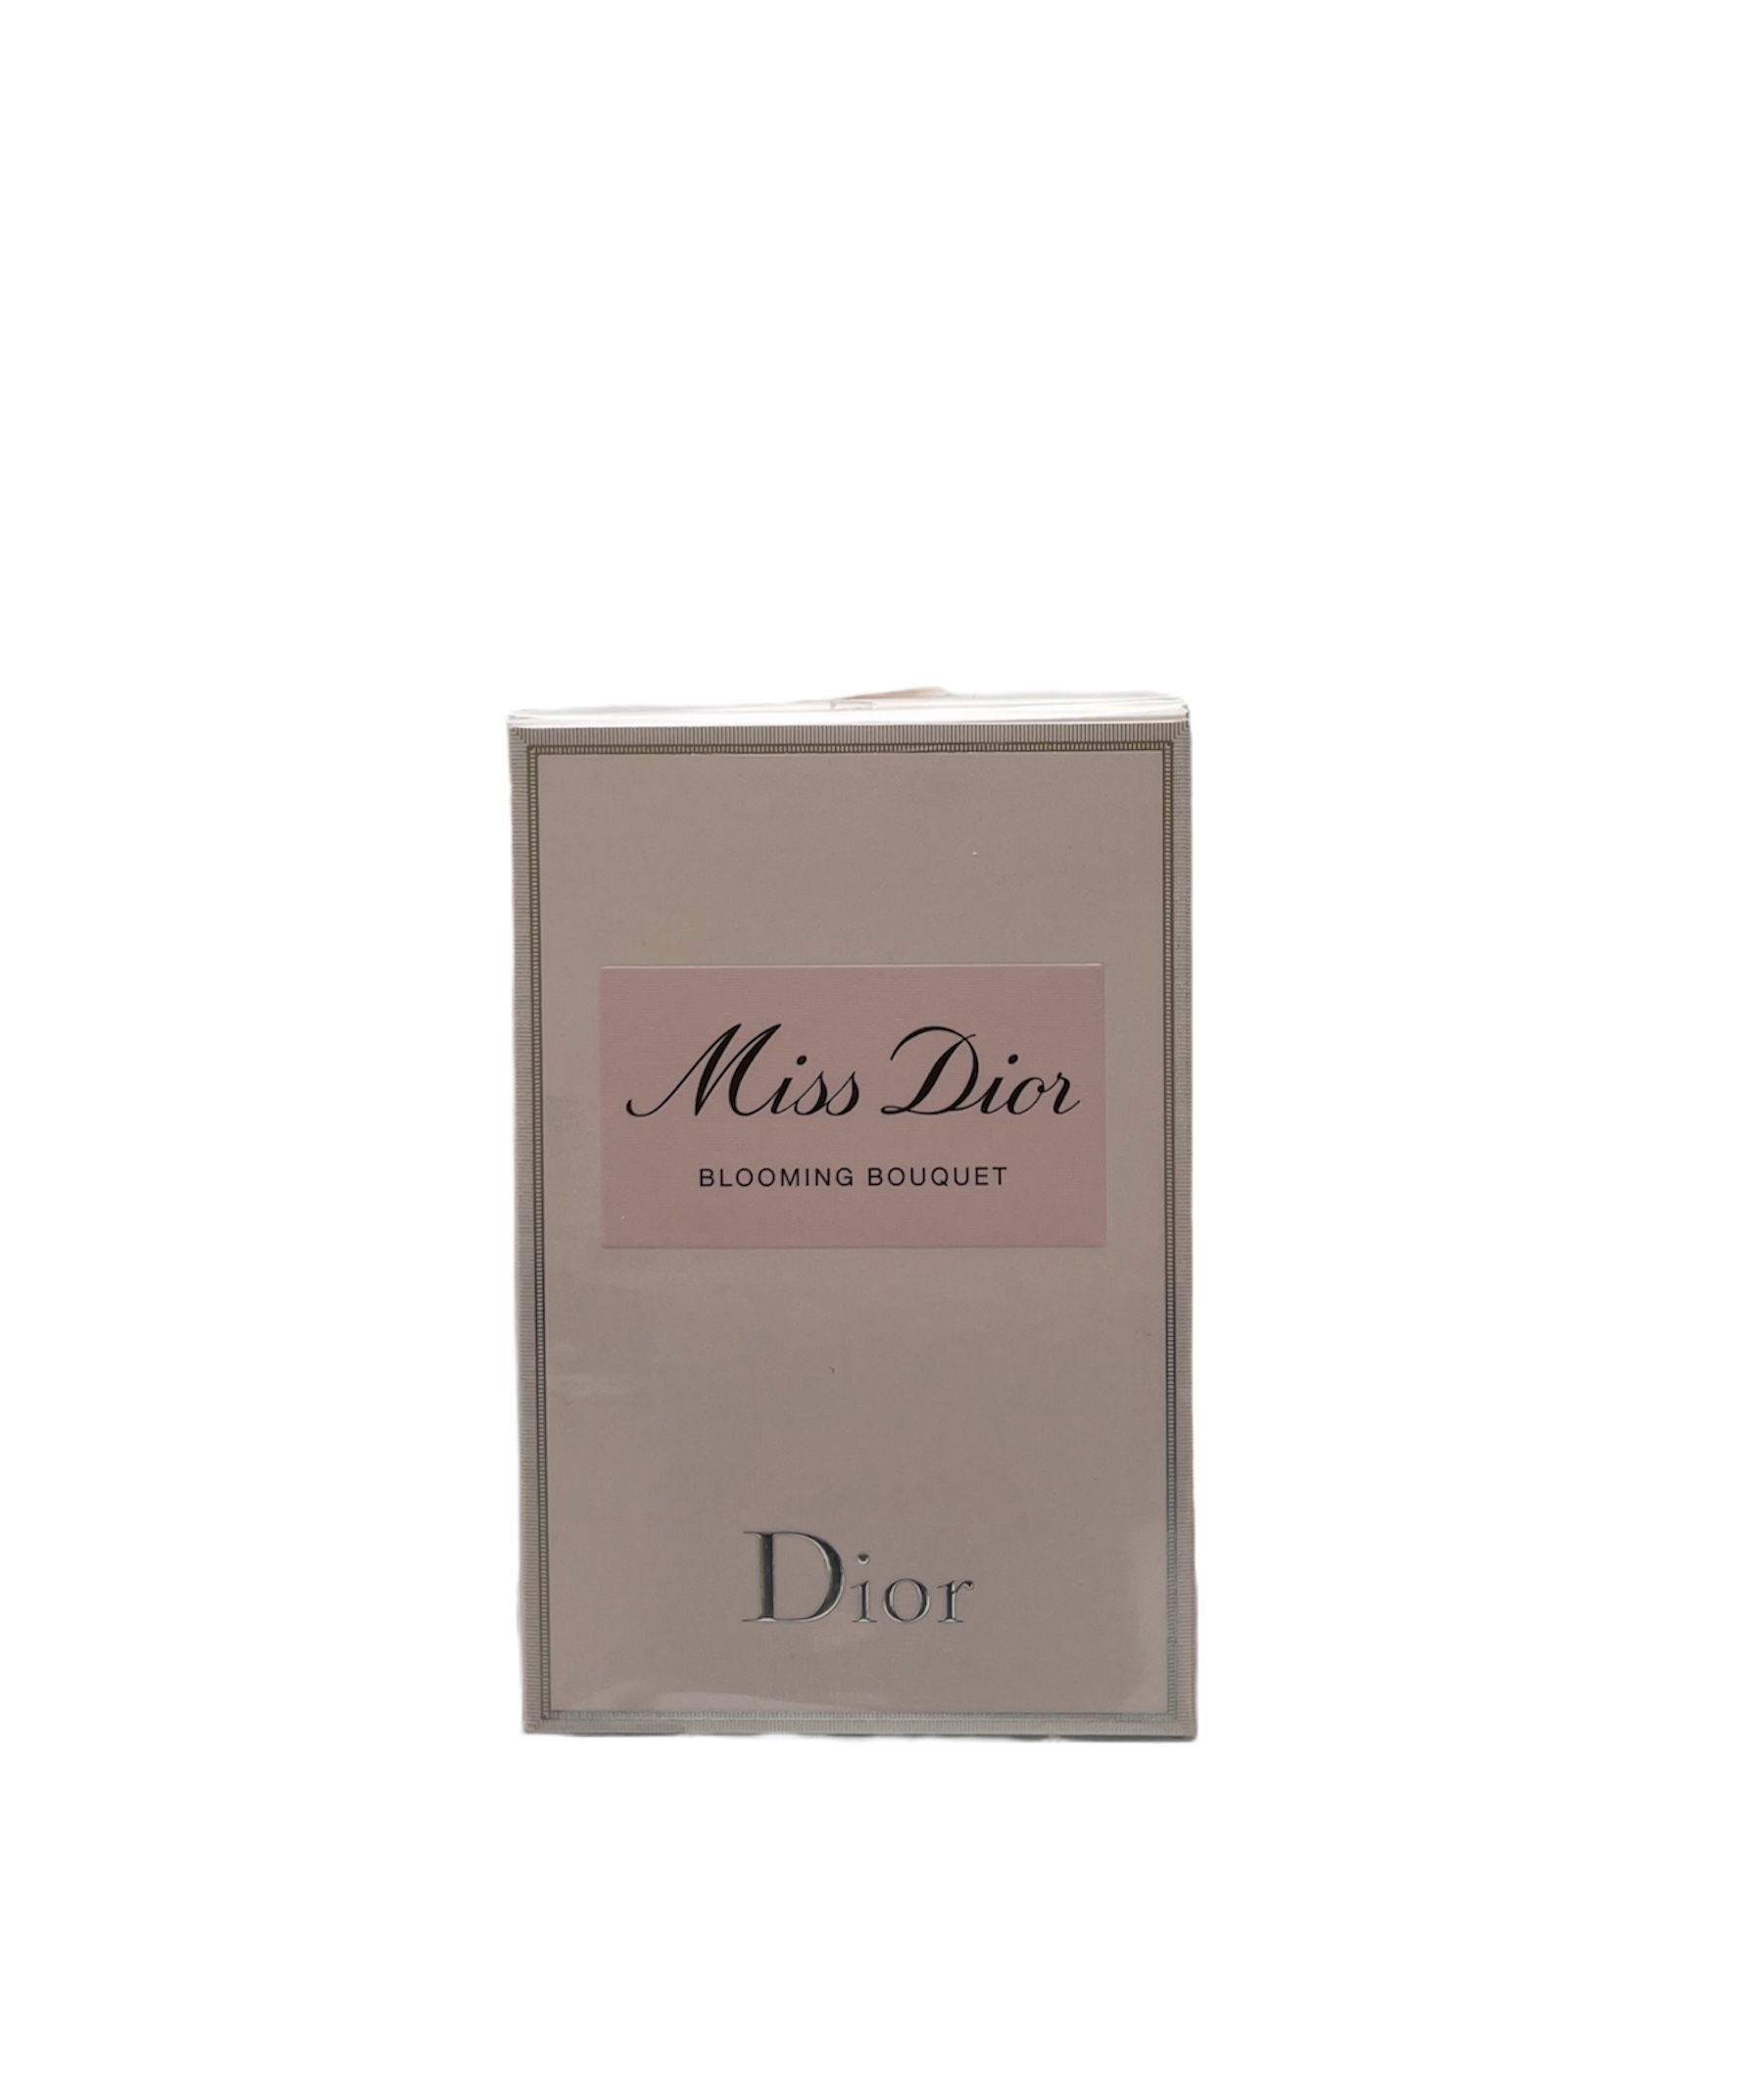 Dior - Miss Dior Blooming Bouquet Eau de Toilette 50ml